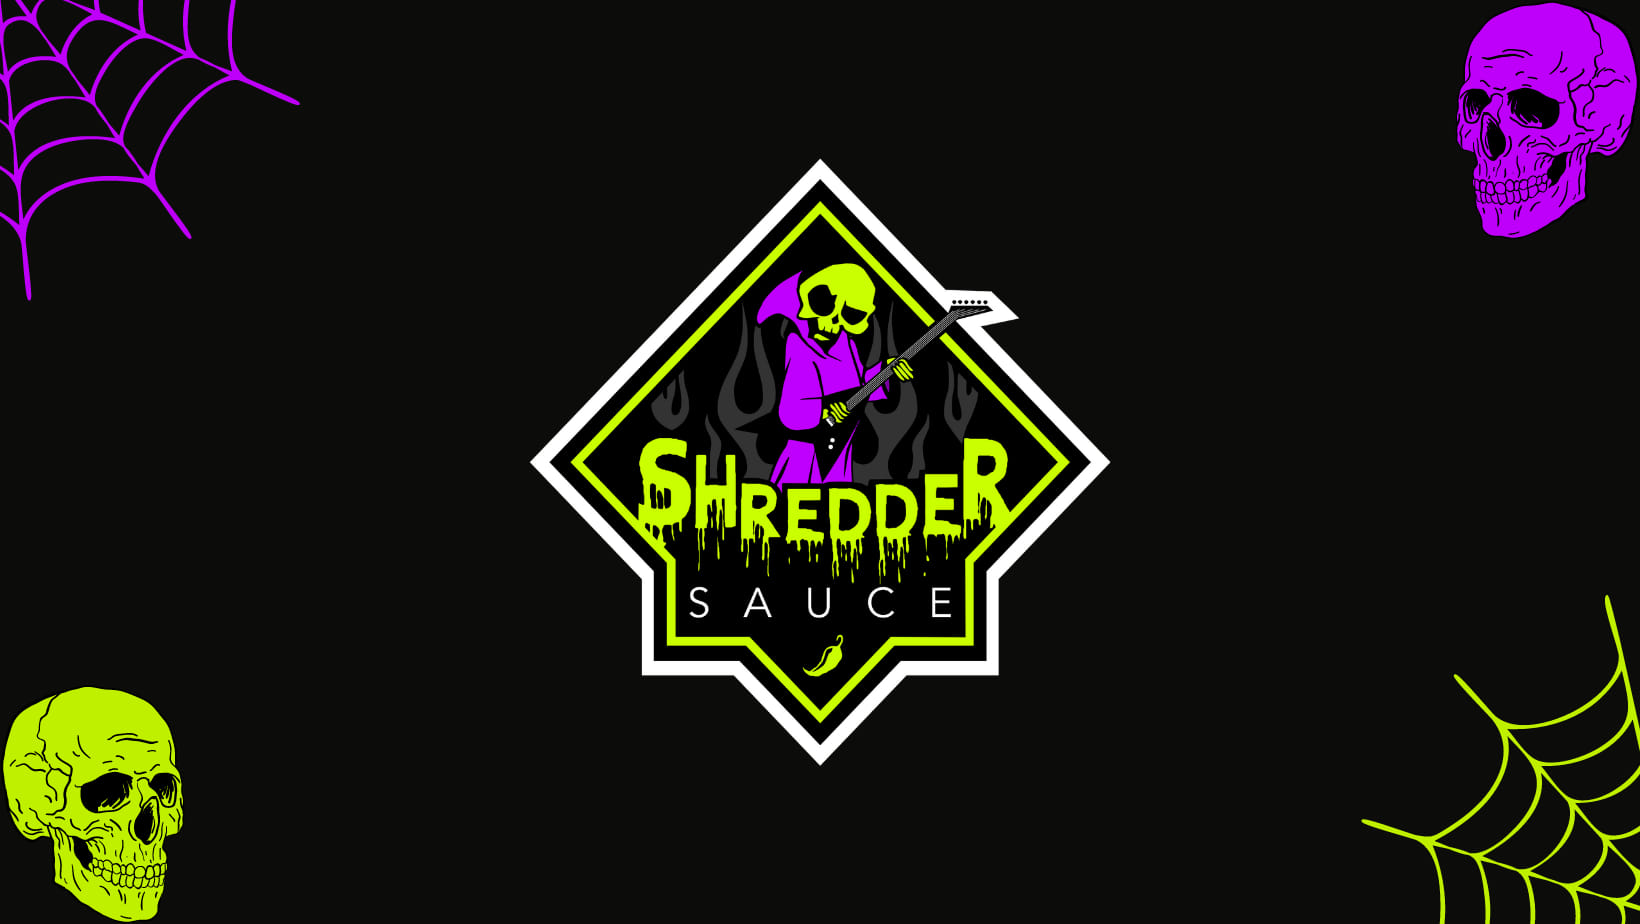 Shredder Sauce, llc